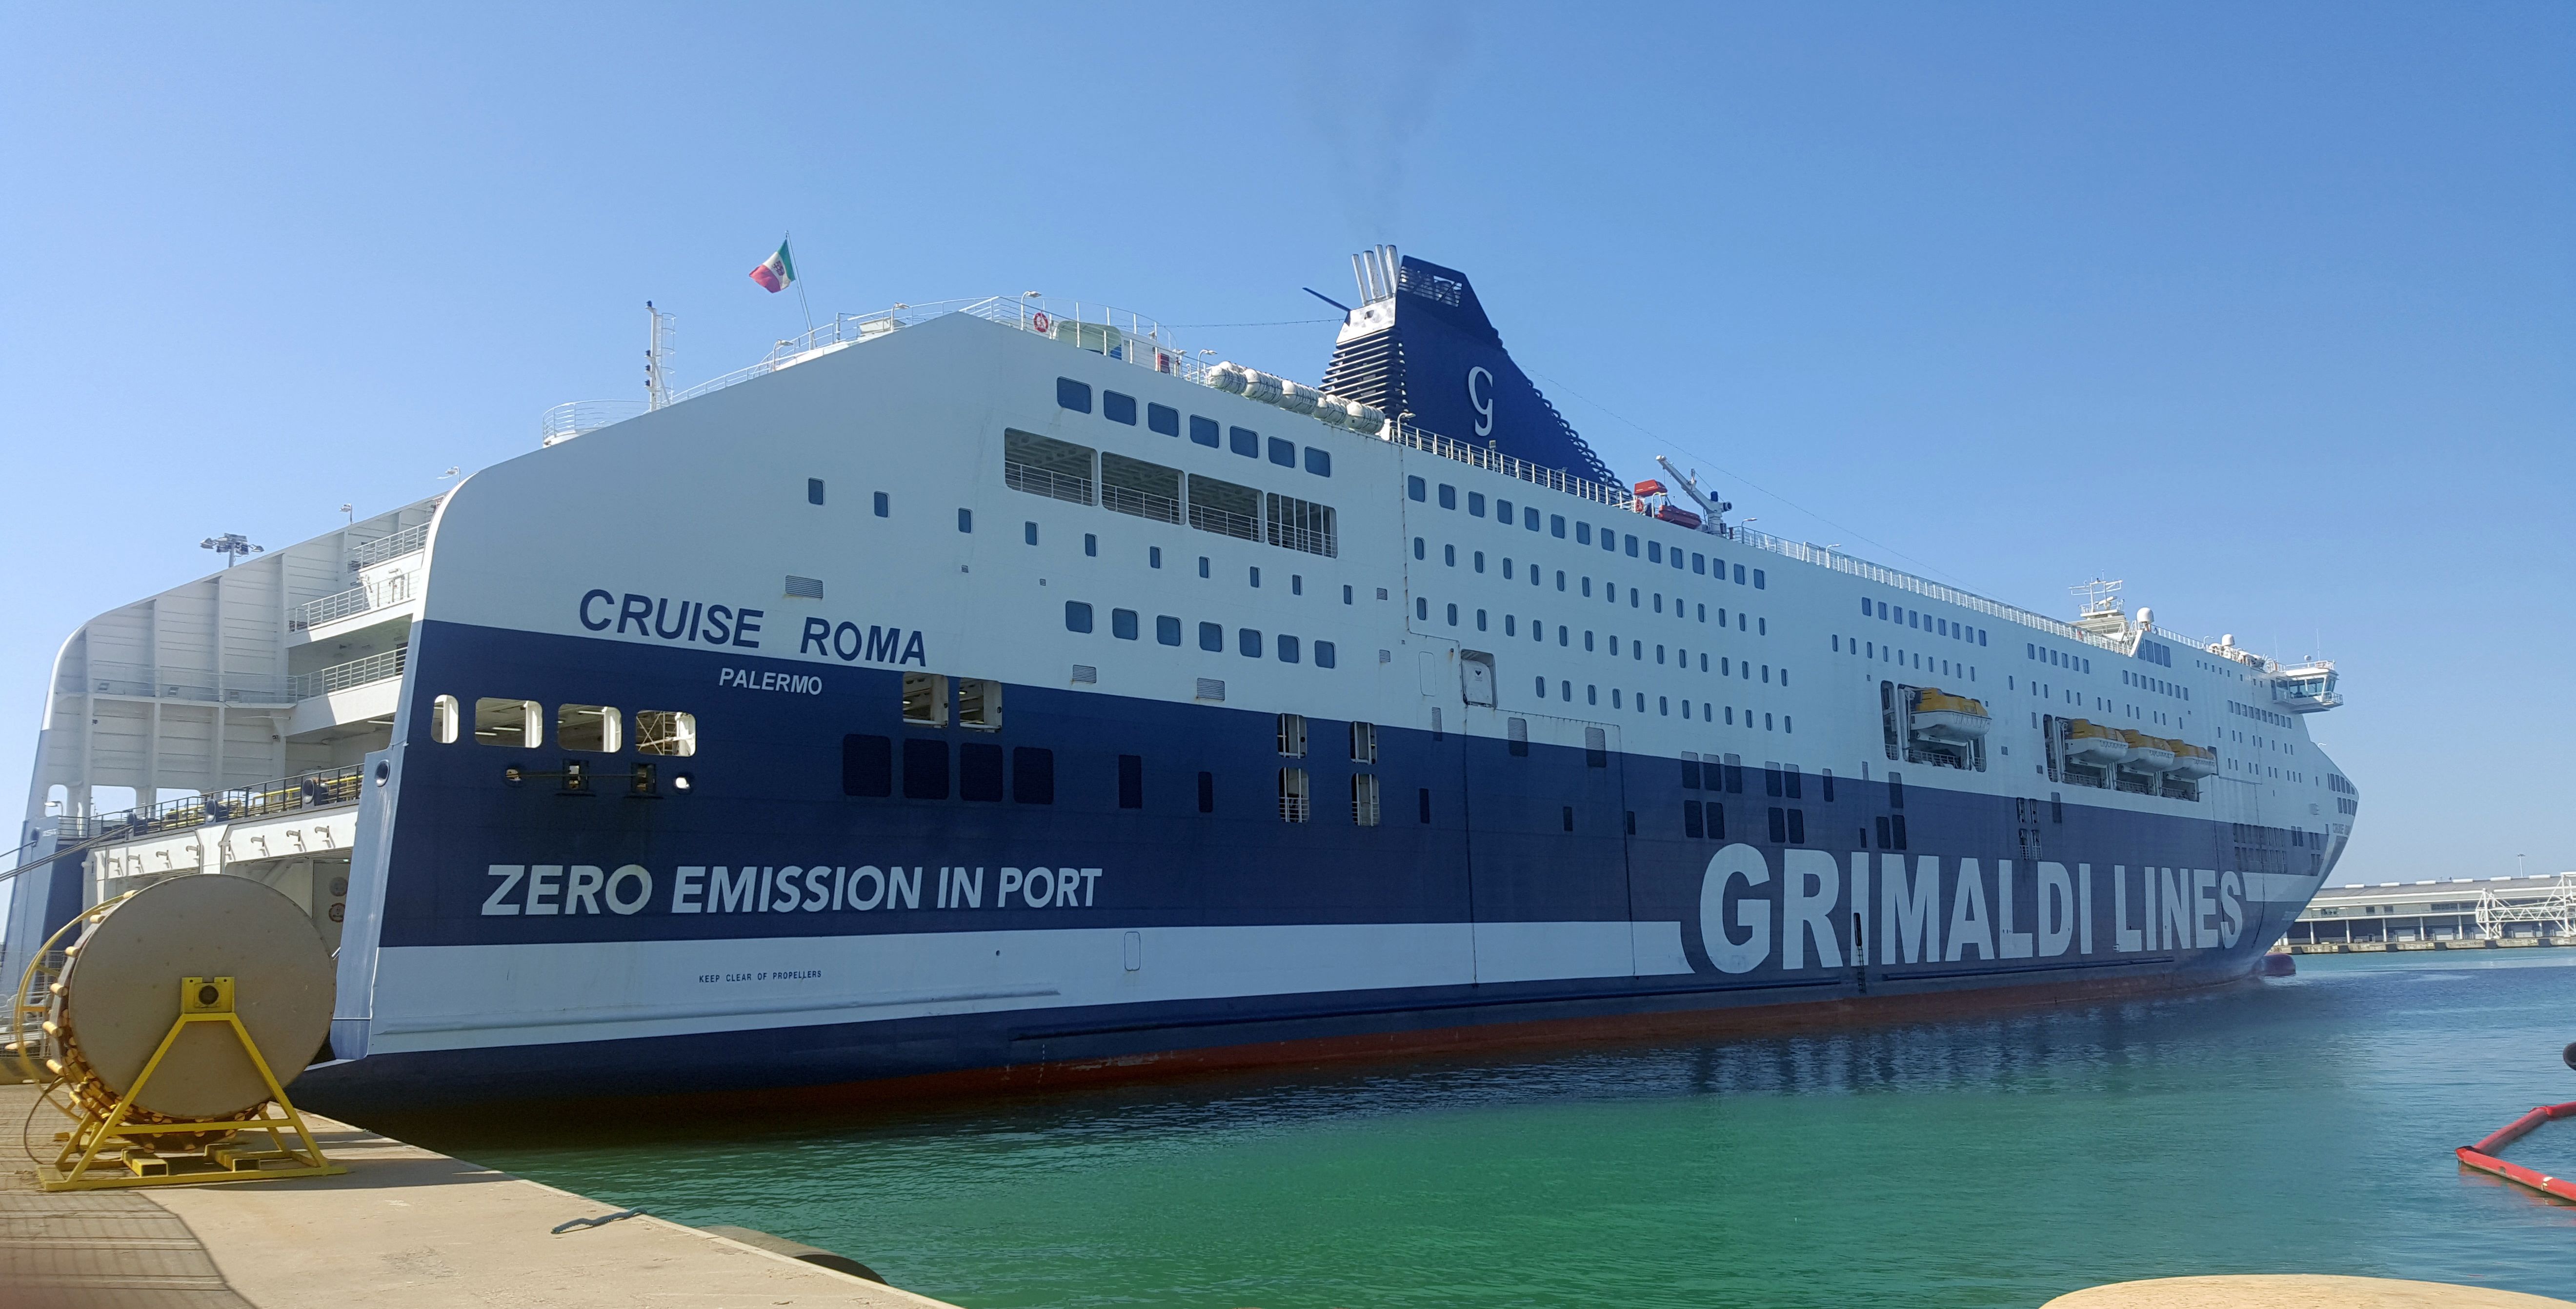 New zero-emission Cruise Roma in the port - Source: messaggeromarittimo.it